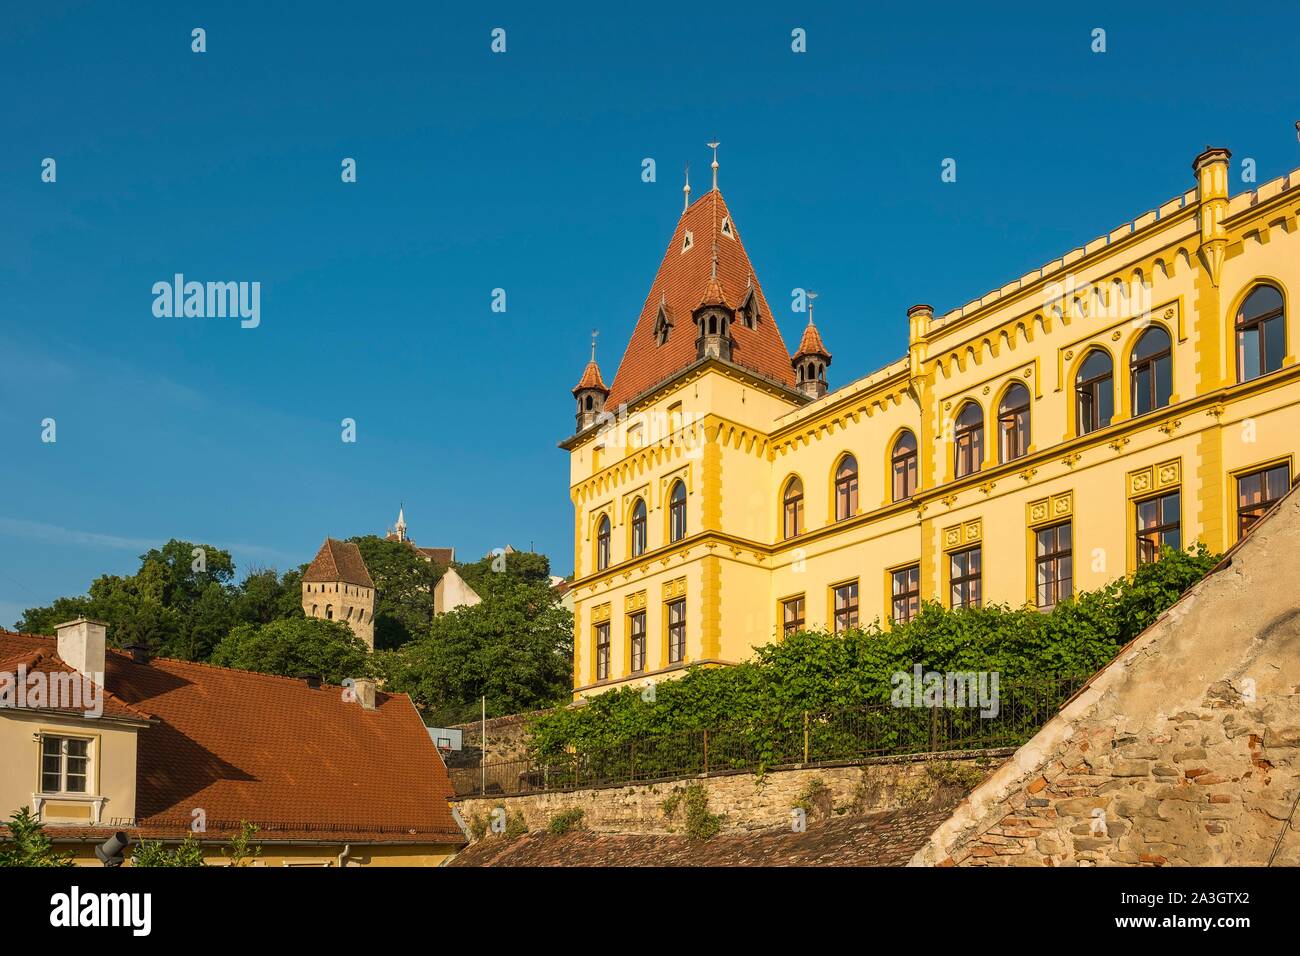 Rumänien, Siebenbürgen, Sighisoara, eine der sieben Sächsischen befestigte Städte Siebenbürgens, als Weltkulturerbe von der UNESCO klassifiziert Stockfoto